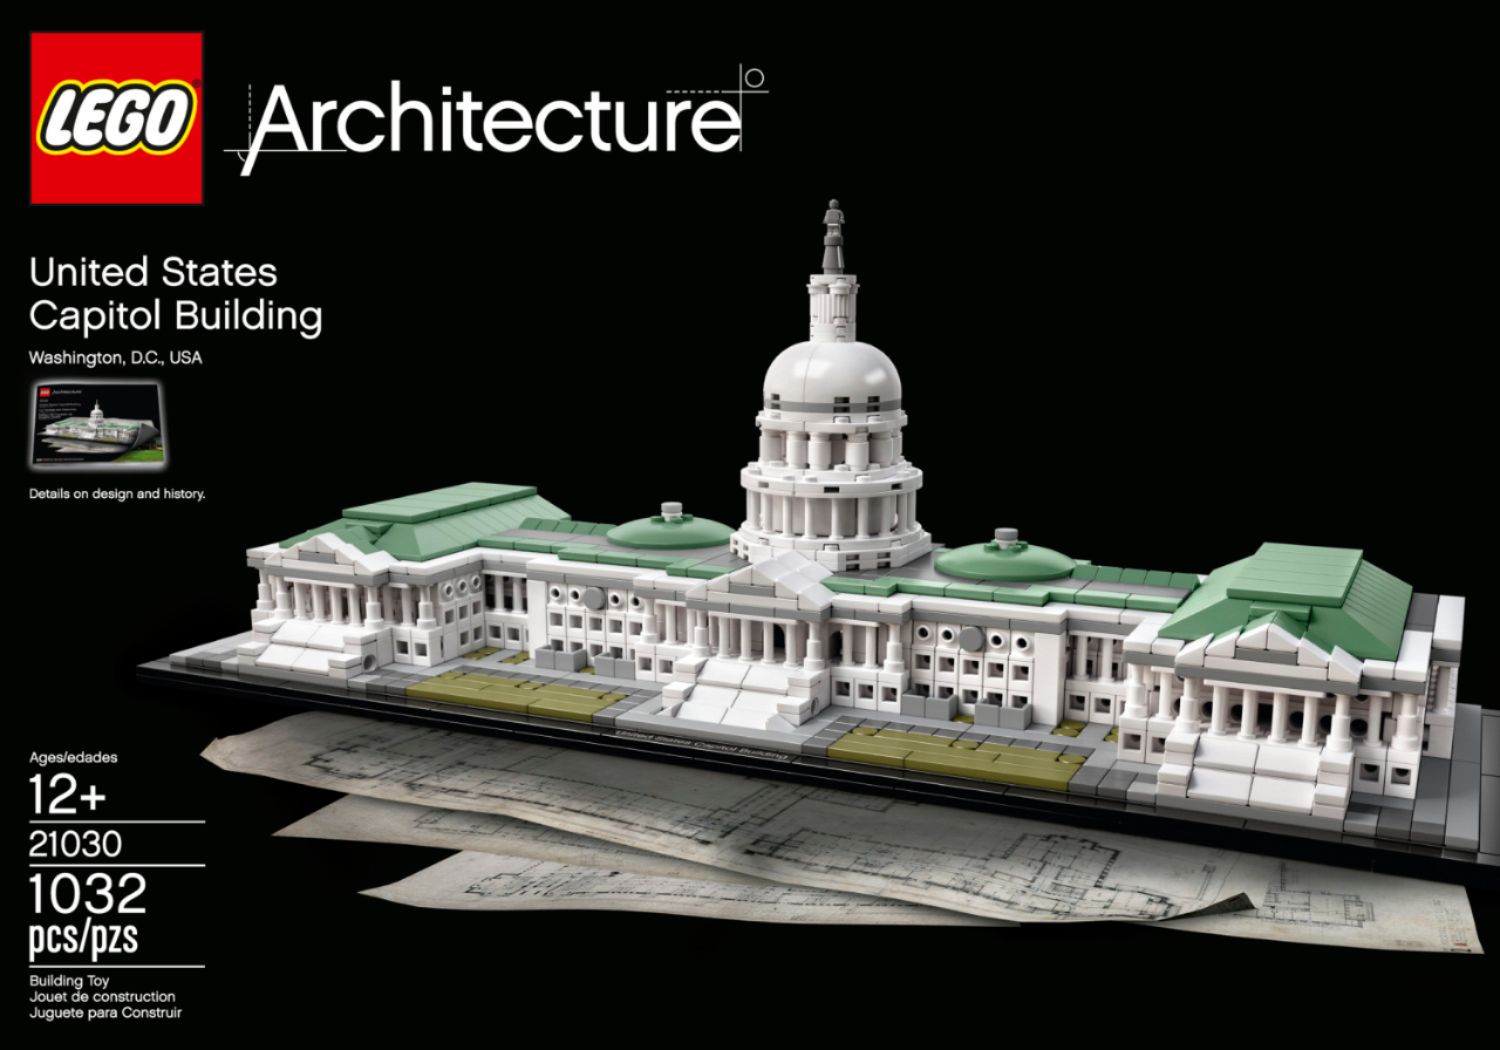 LEGO IDEAS - LEGO Washington Monument